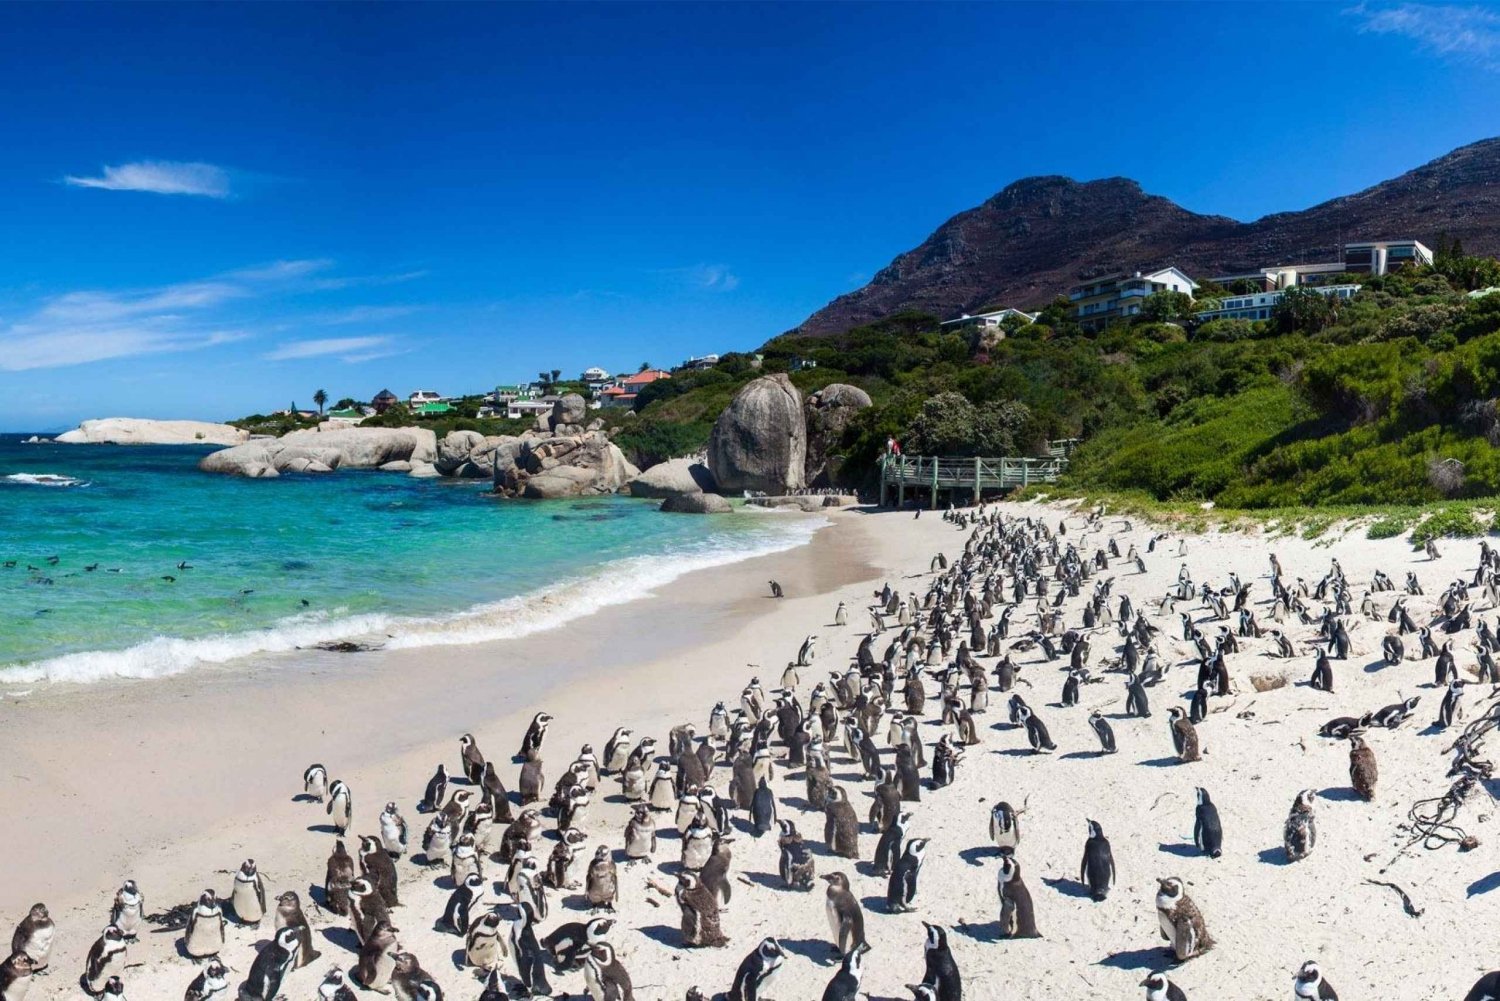 Meio dia: Penguins Boulders Beach (grupo pequeno)